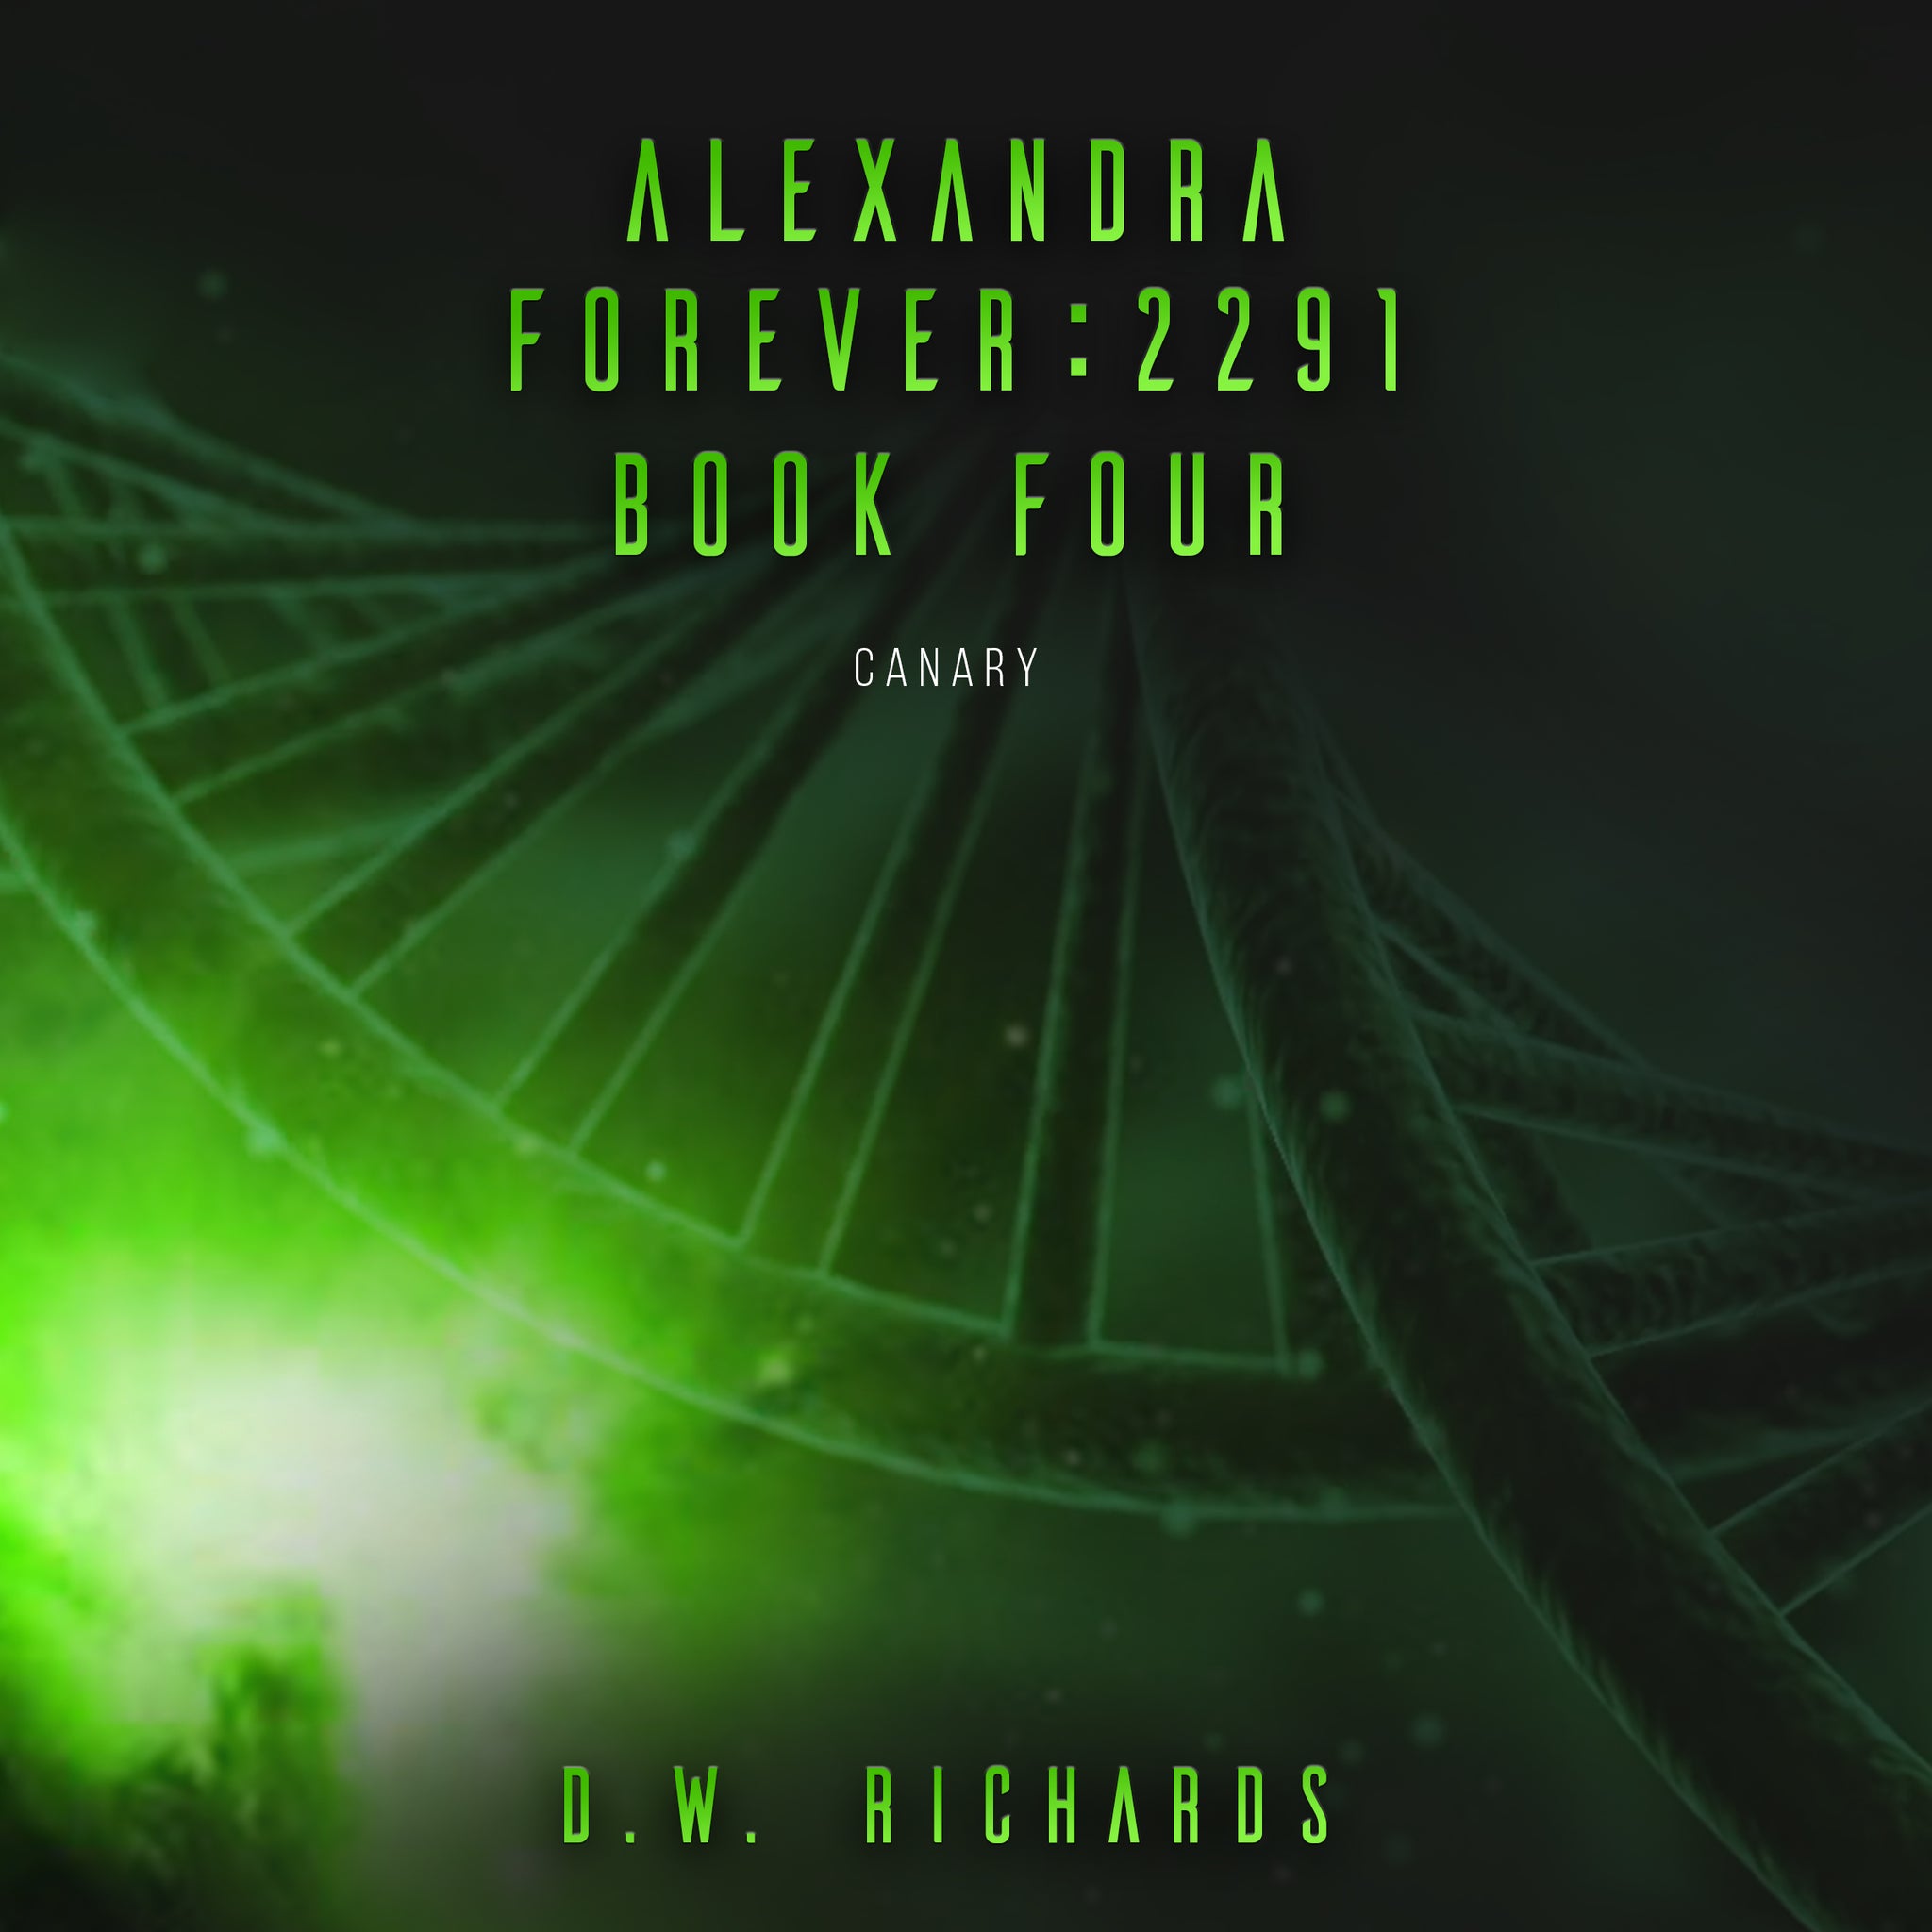 Audiobook (mp3) ~ Alexandra Forever 2291 — Book Four: Canary